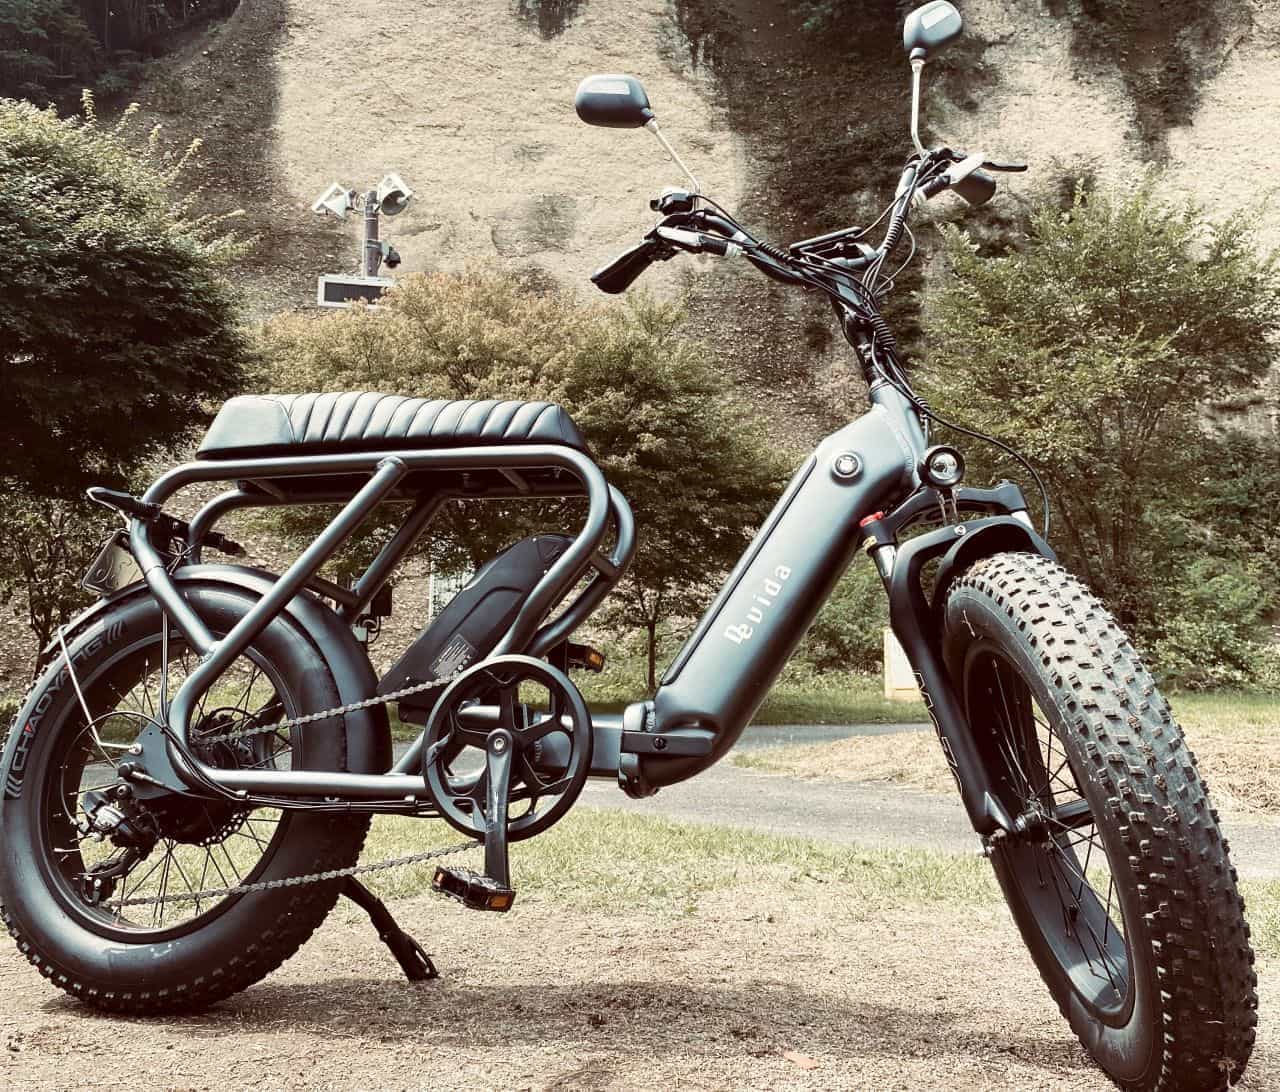 ファットタイヤとロングシートでバイクらしさを高めた電動バイク「De vida bike」CAMPFIREに登場